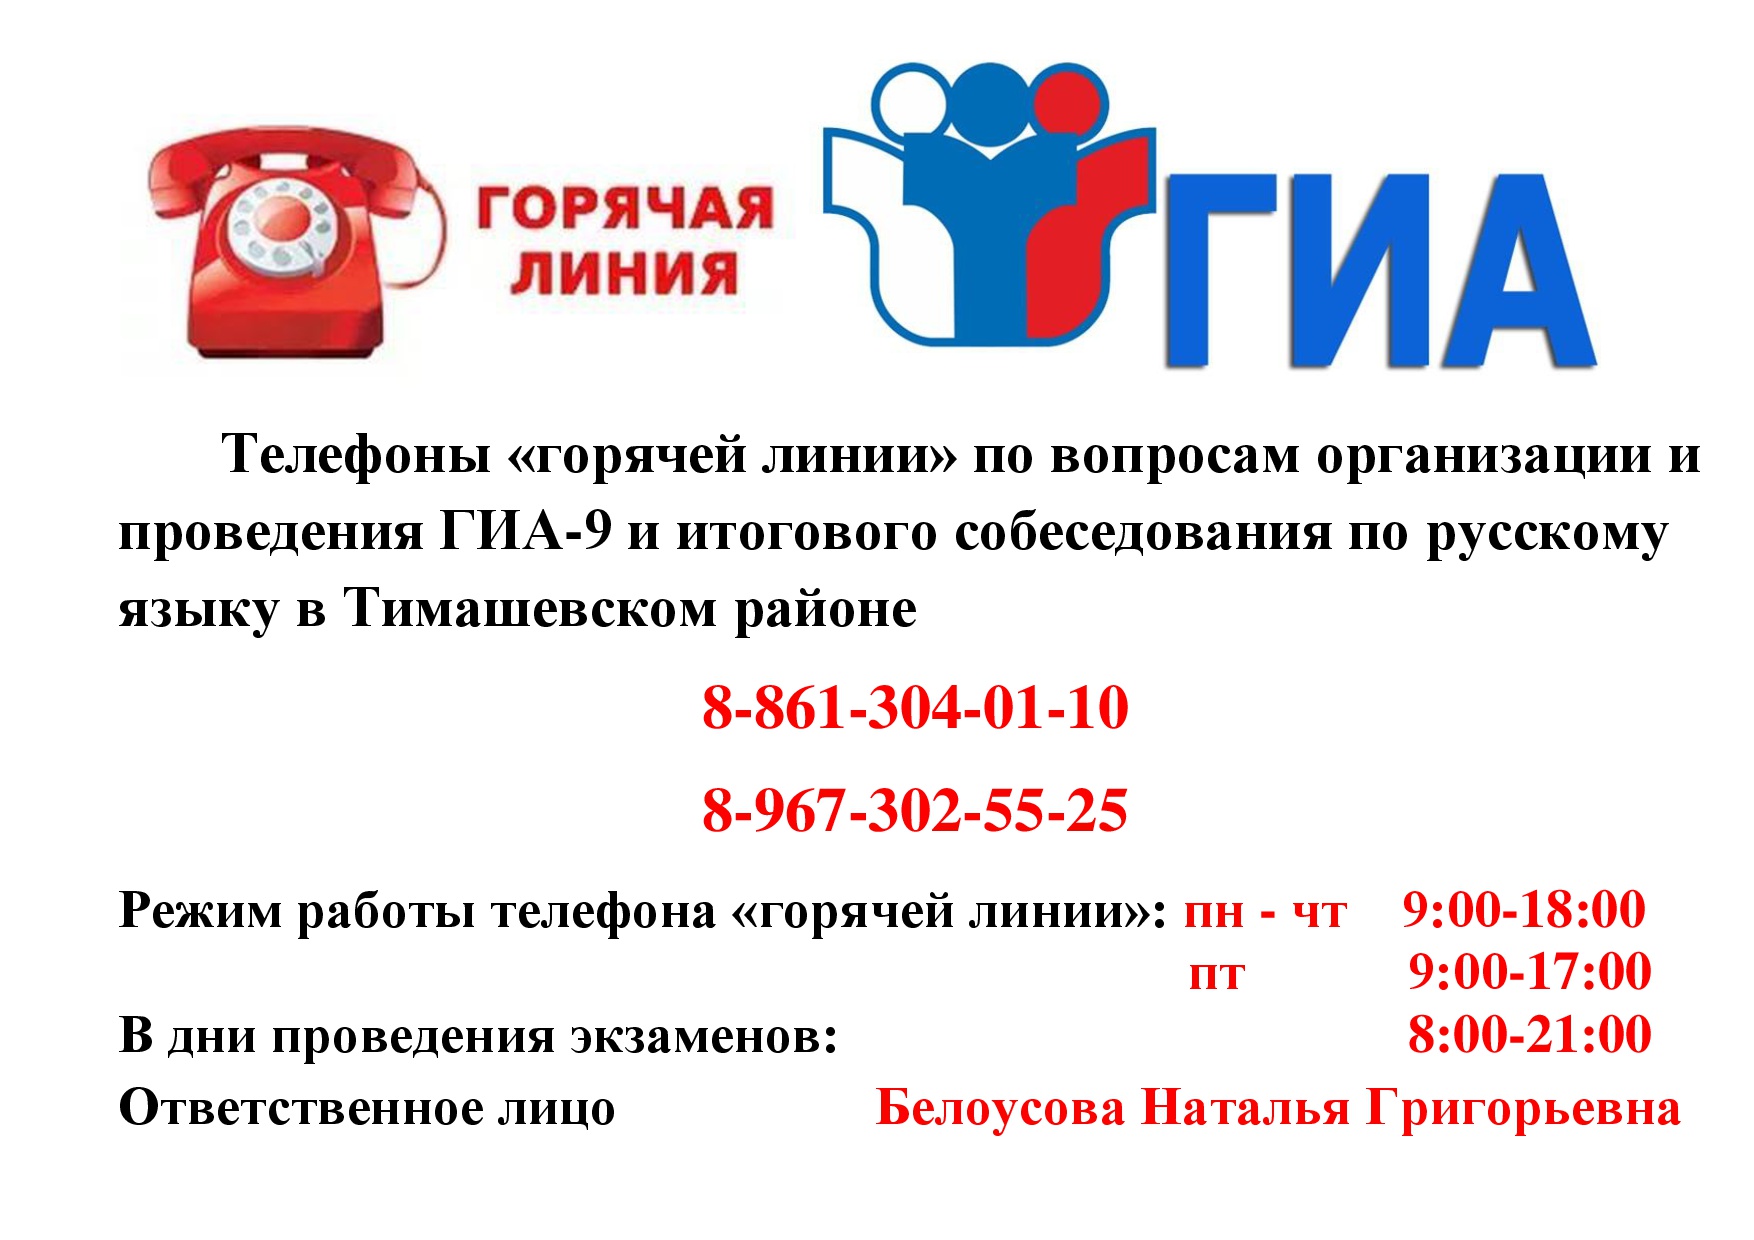 Телефон горячей линии ГИА 9 и ИС  в Тимашевском районе